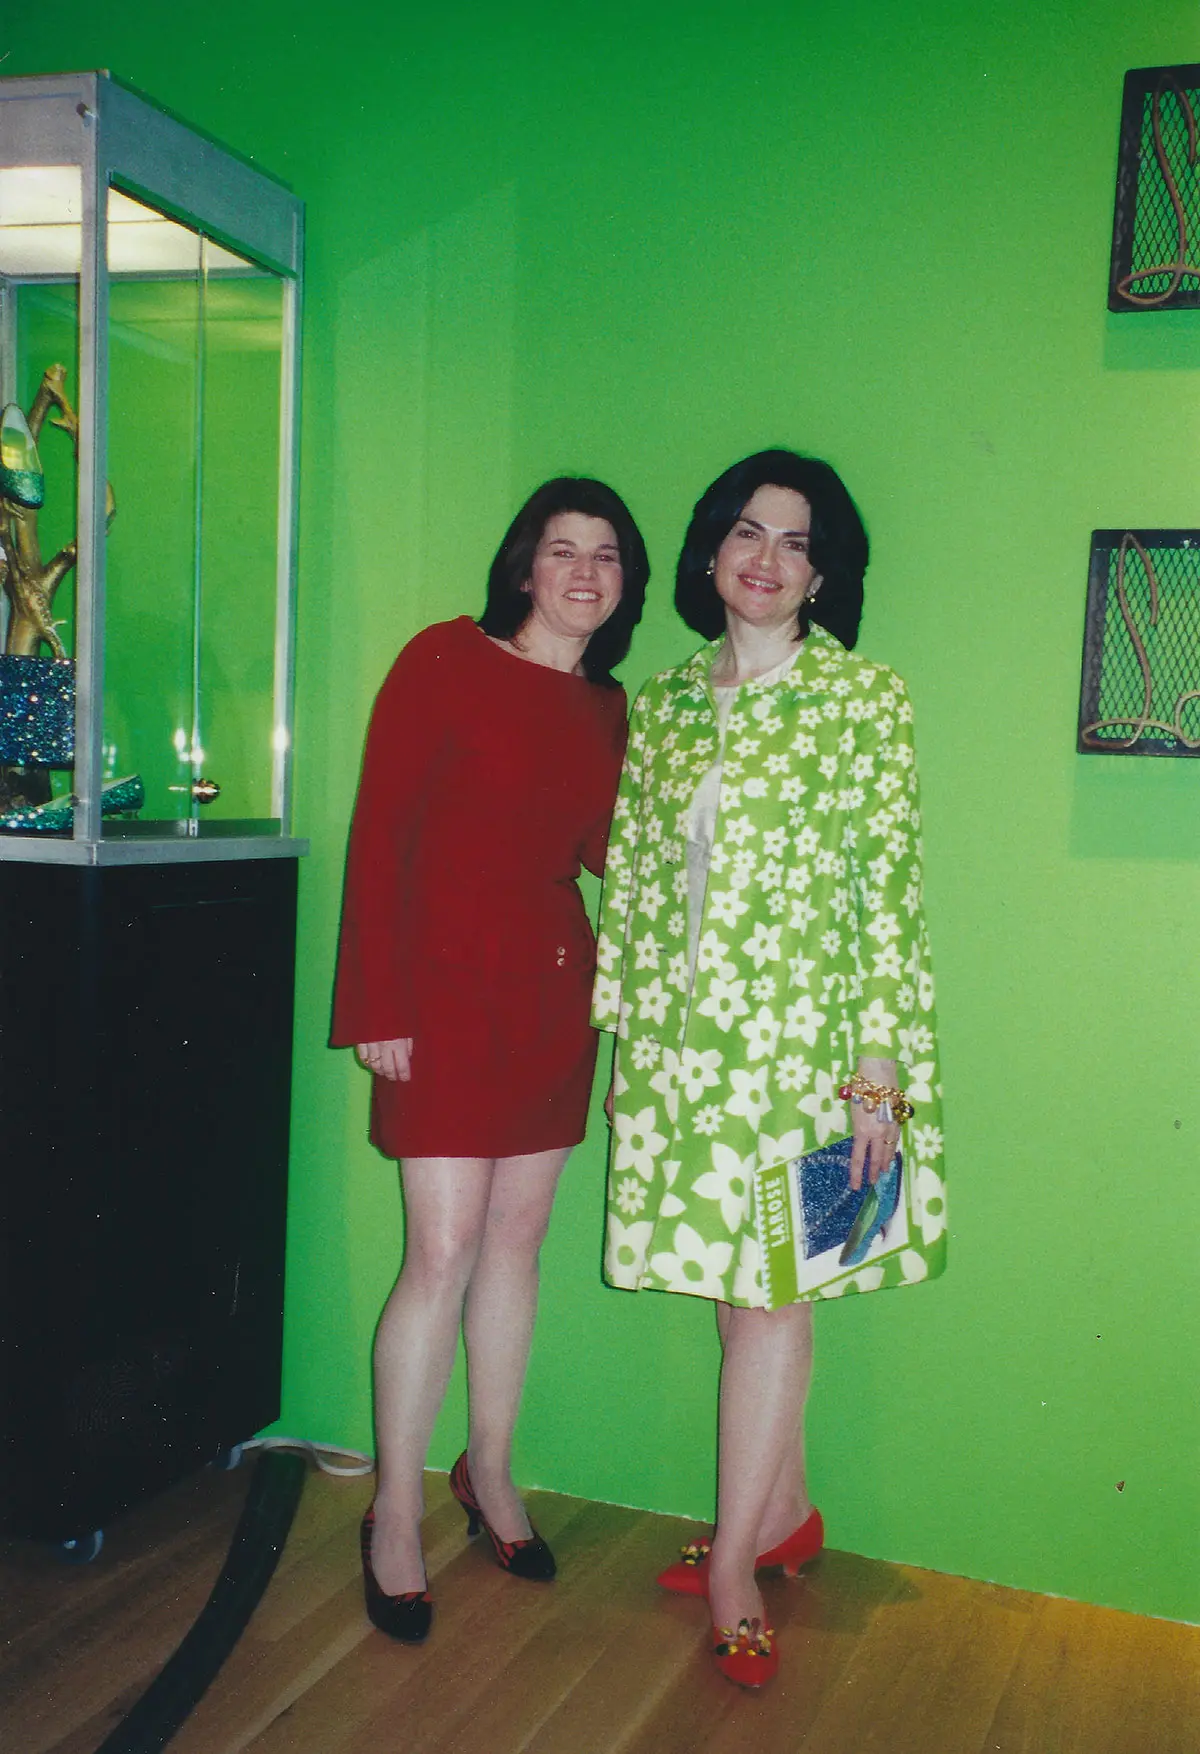 June 2000 Sotheby’s La Rose Shoe Collection Auction Exhibit, With Colleague Marianna Klaiman